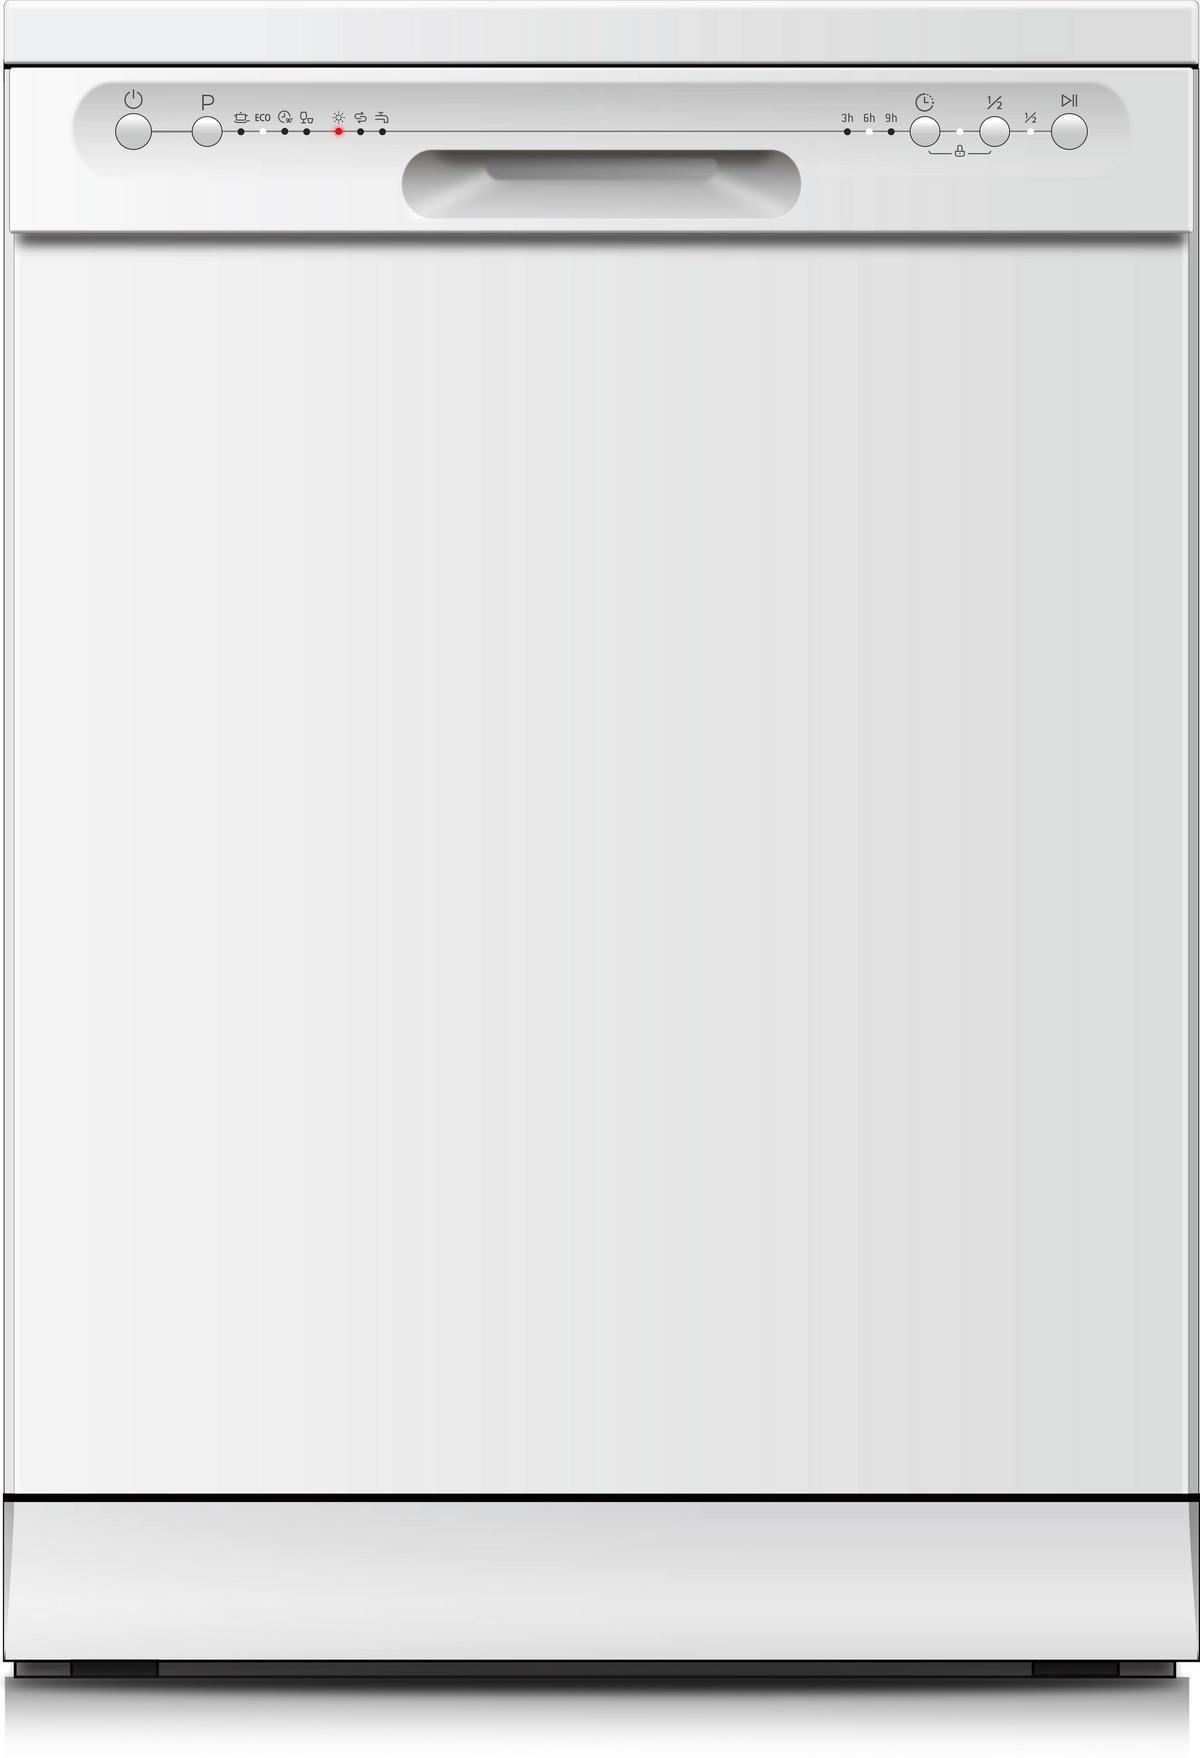 Geschirrspüler Gsp12-6e Weiss - Weiß, Trend, Kunststoff/Metall (59,8/84,5/60cm) - PKM